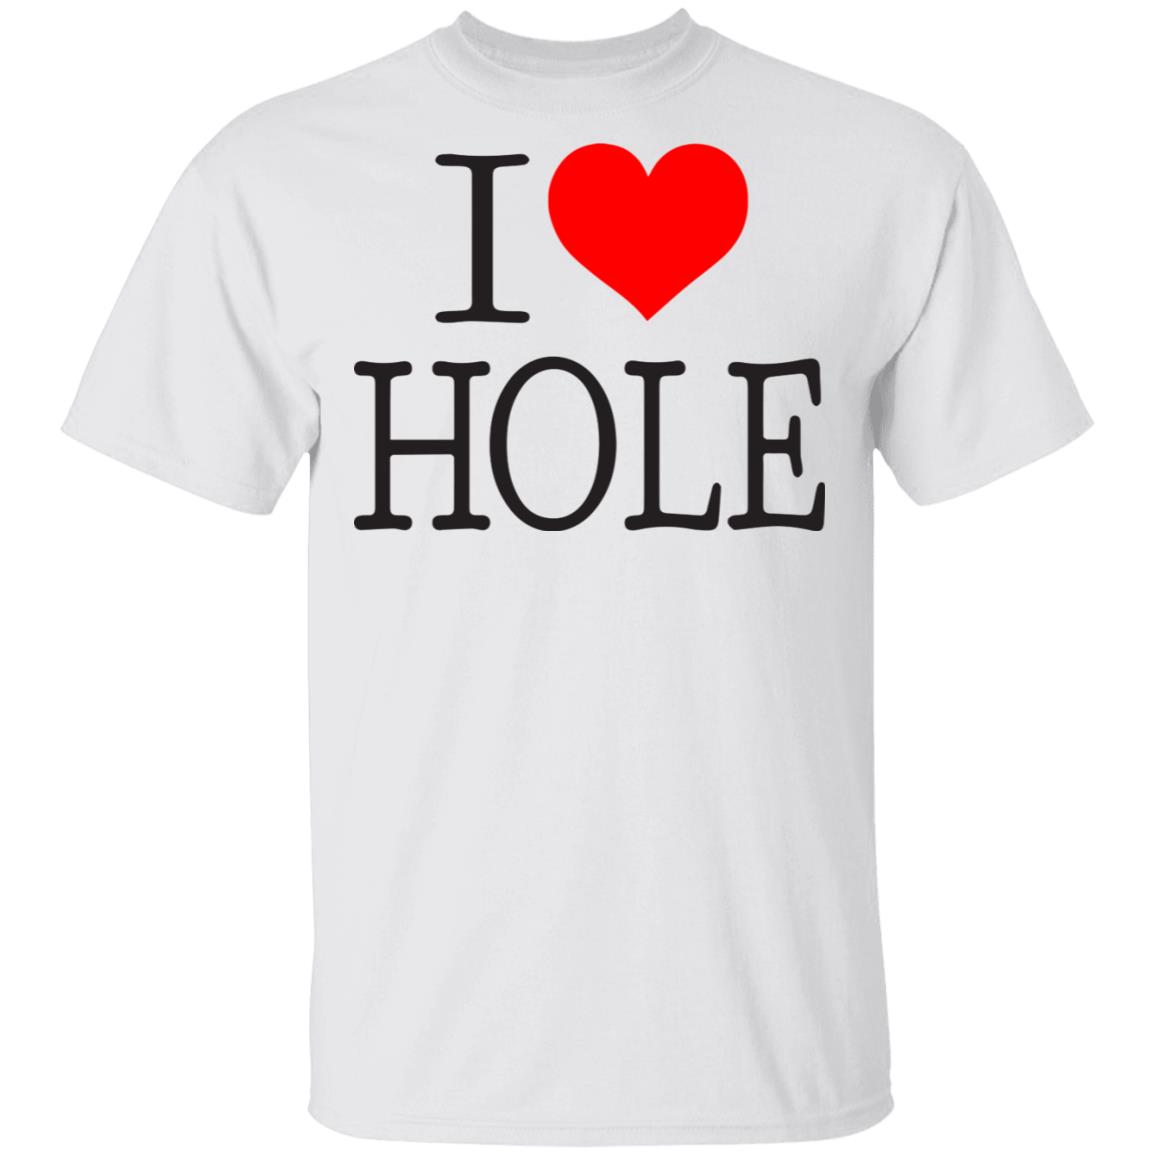 I love hole shirt - Rockatee